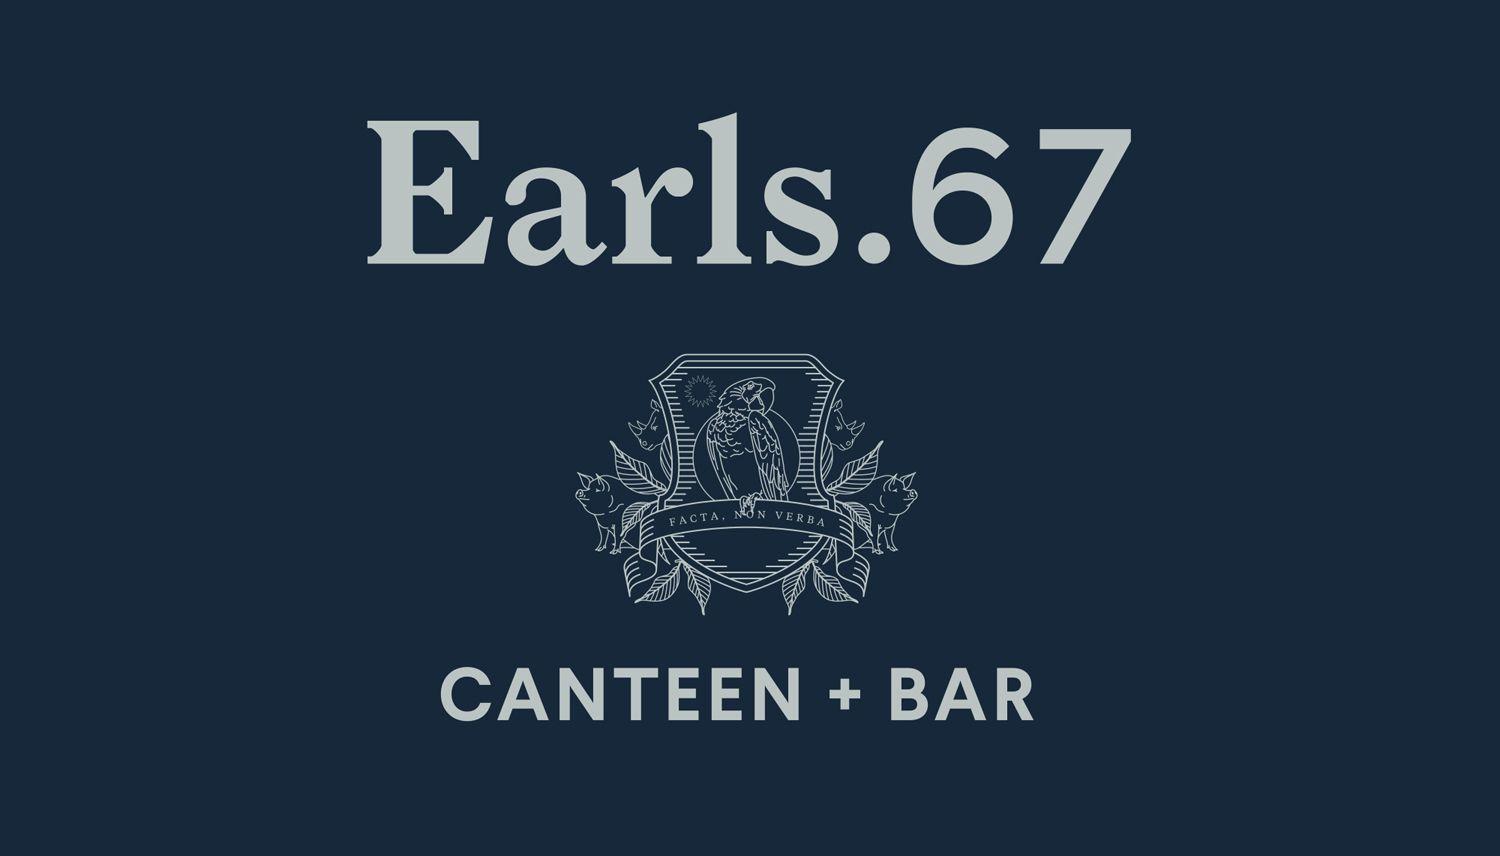 Earl's Logo - New Brand Identity for Earls.67 by Glasfurd & Walker